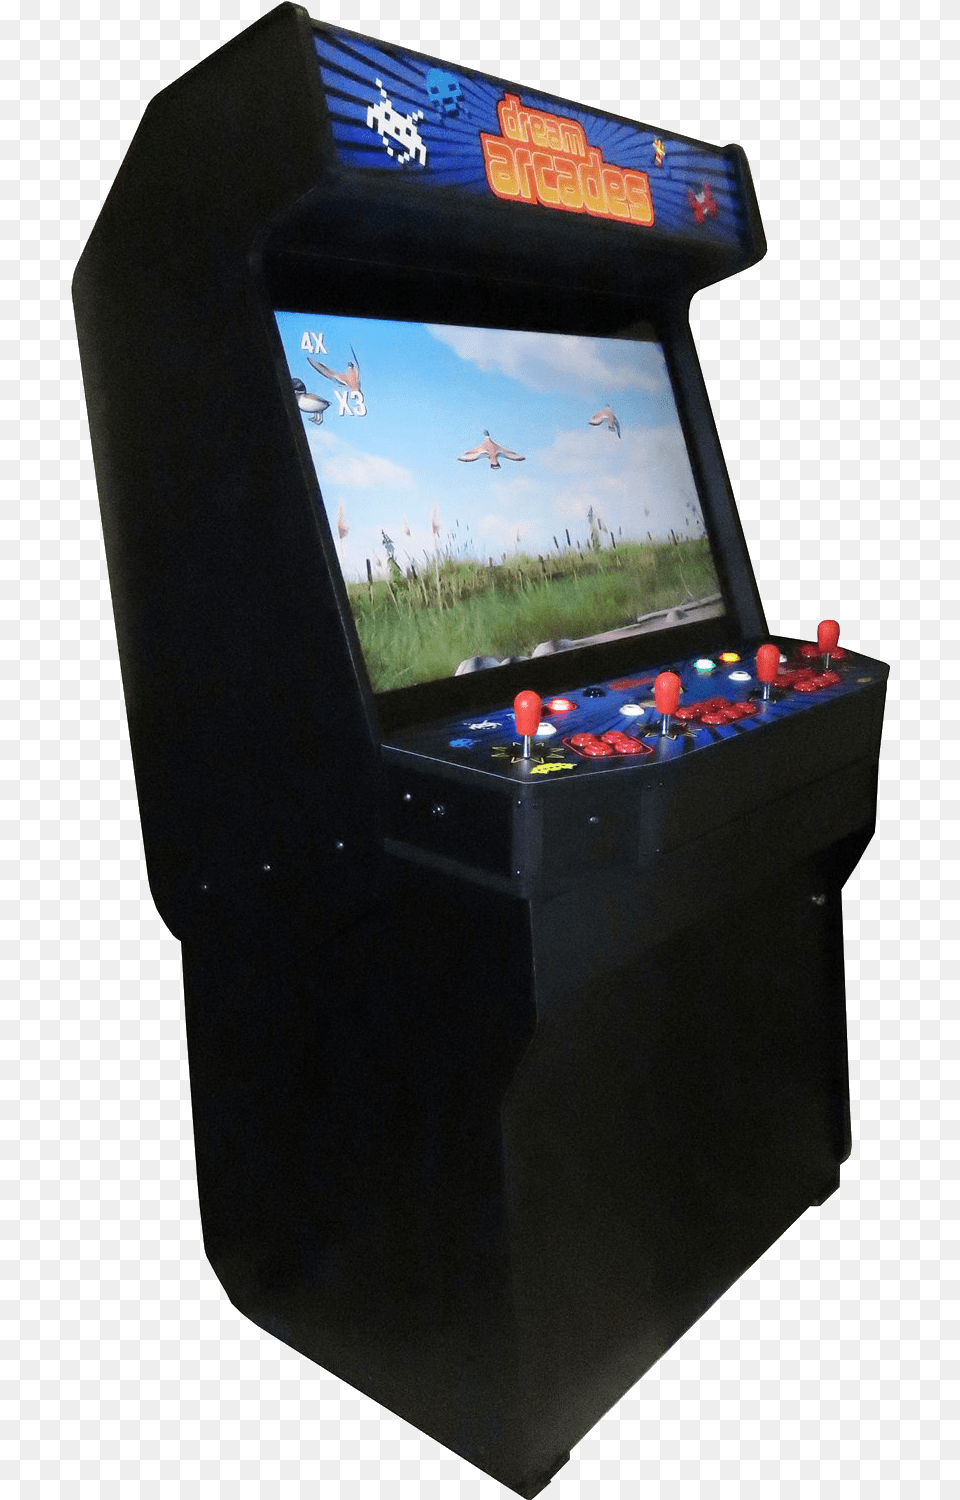 Donkey Kong Arcade, Arcade Game Machine, Game, Animal, Bird Png Image